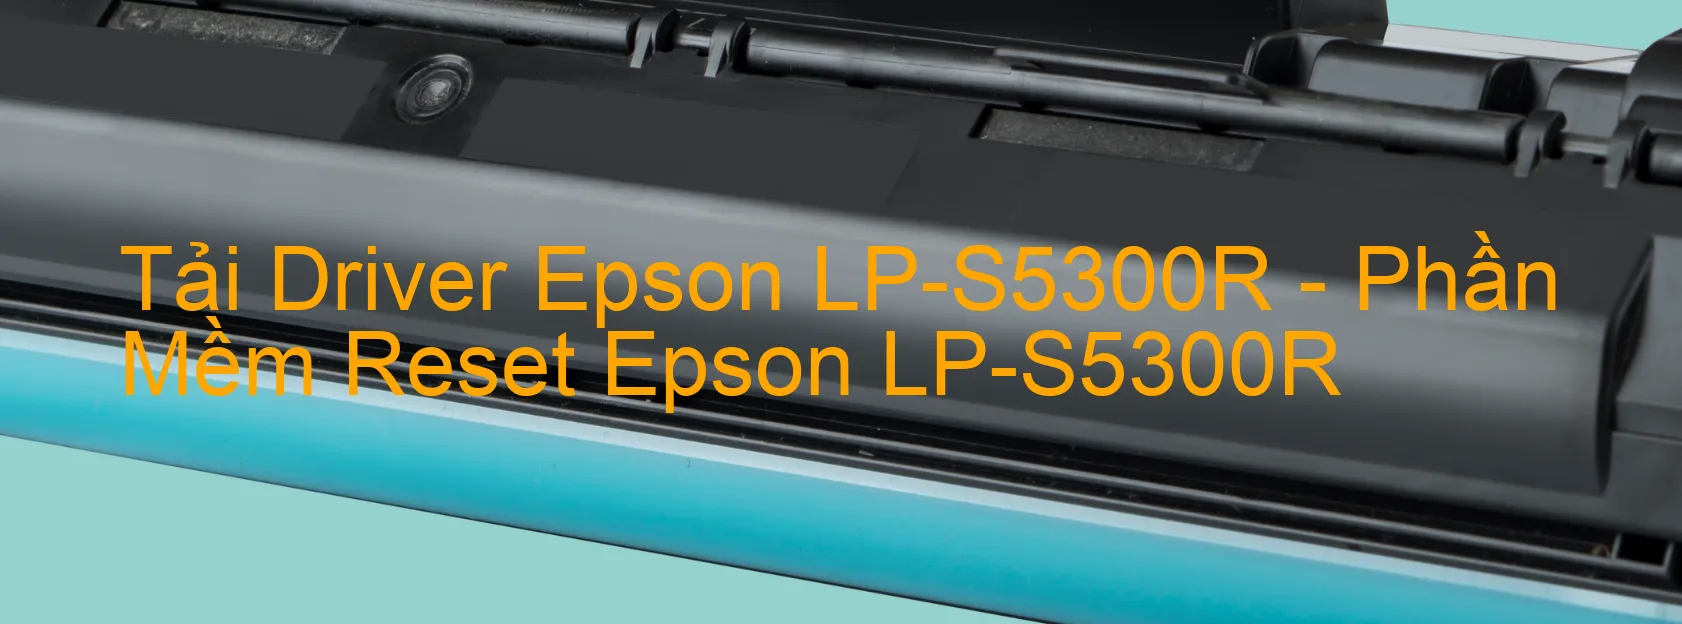 Driver Epson LP-S5300R, Phần Mềm Reset Epson LP-S5300R